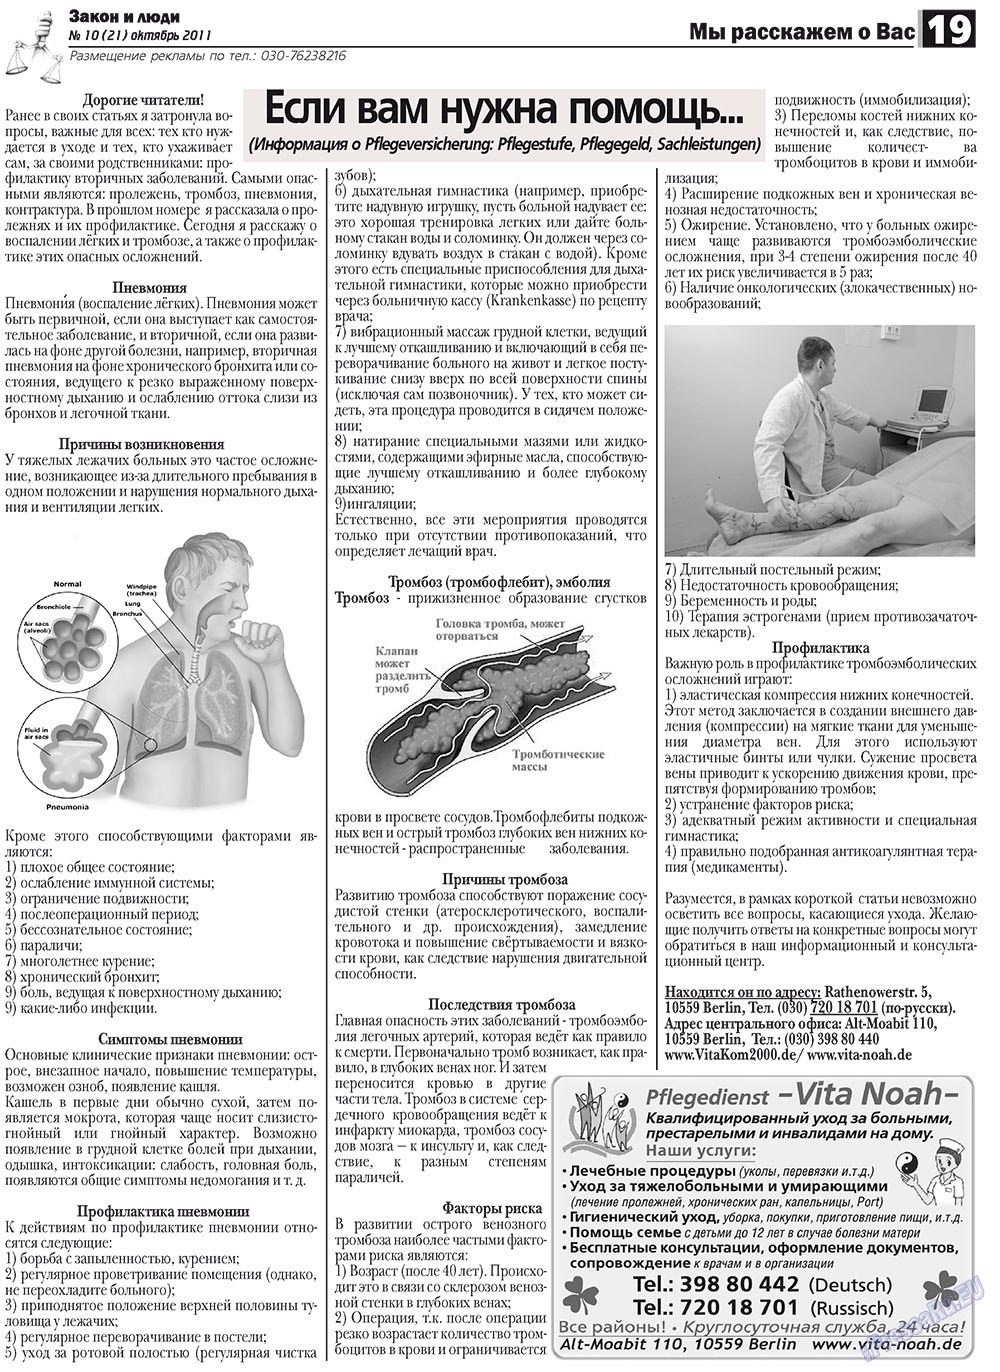 Закон и люди, газета. 2011 №10 стр.19